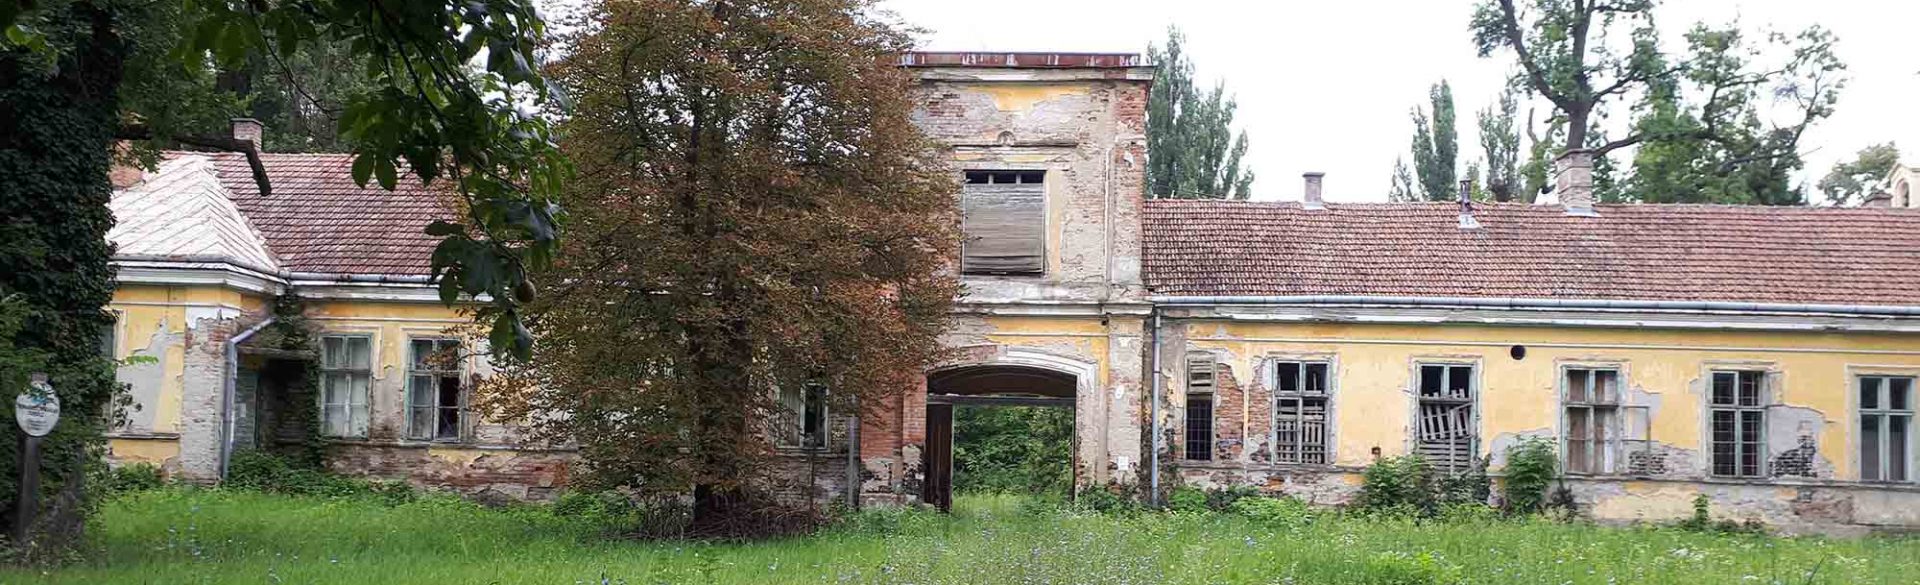 Wenckheim Mansion in Gerla Photo: Wikipedia / Tothh417